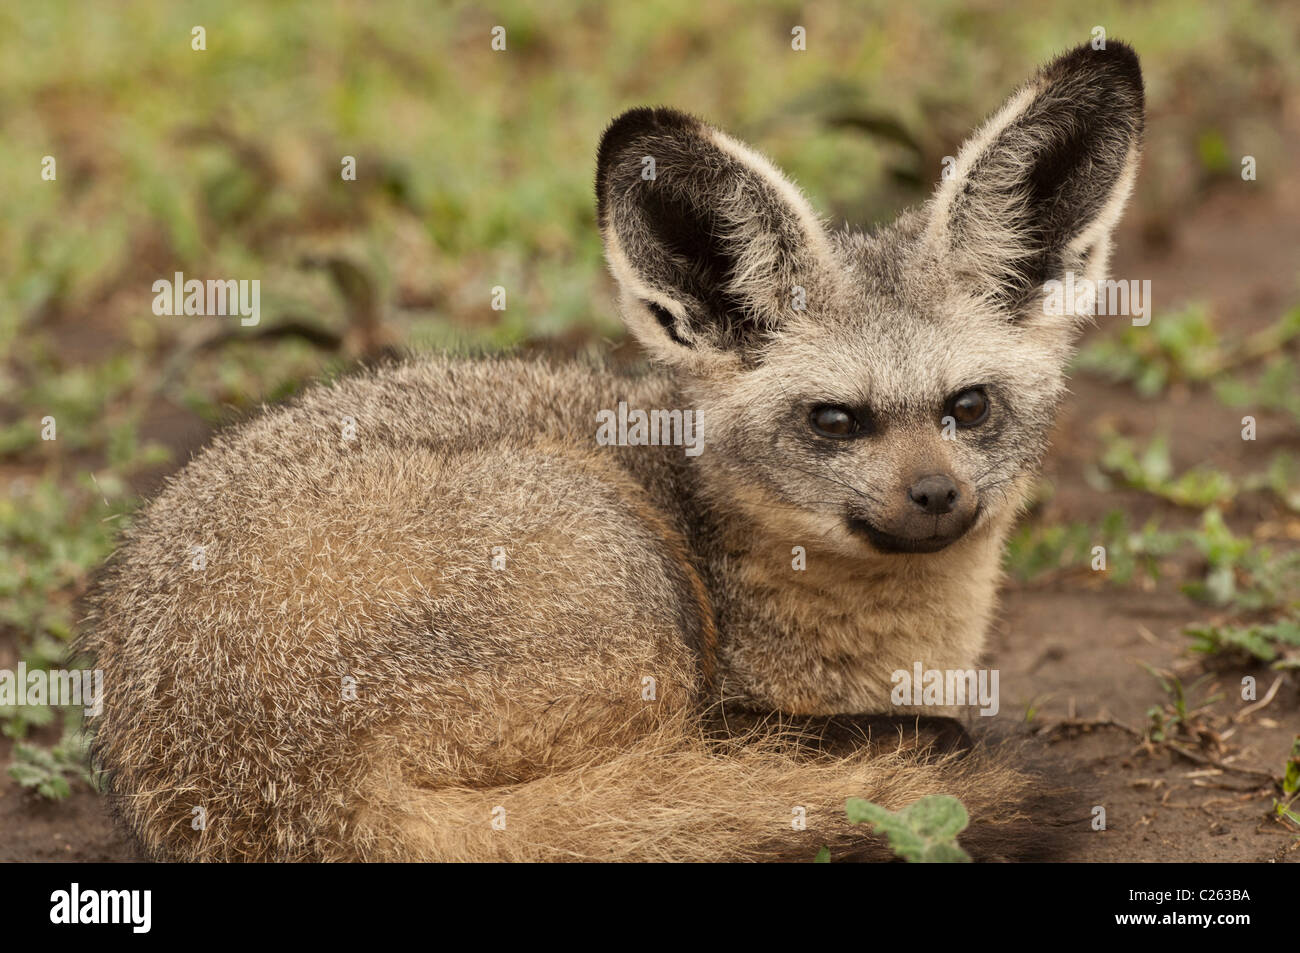 Stock Foto Nahaufnahme von einem Hieb-eared Fuchs zusammengerollt, ruhen. Stockfoto